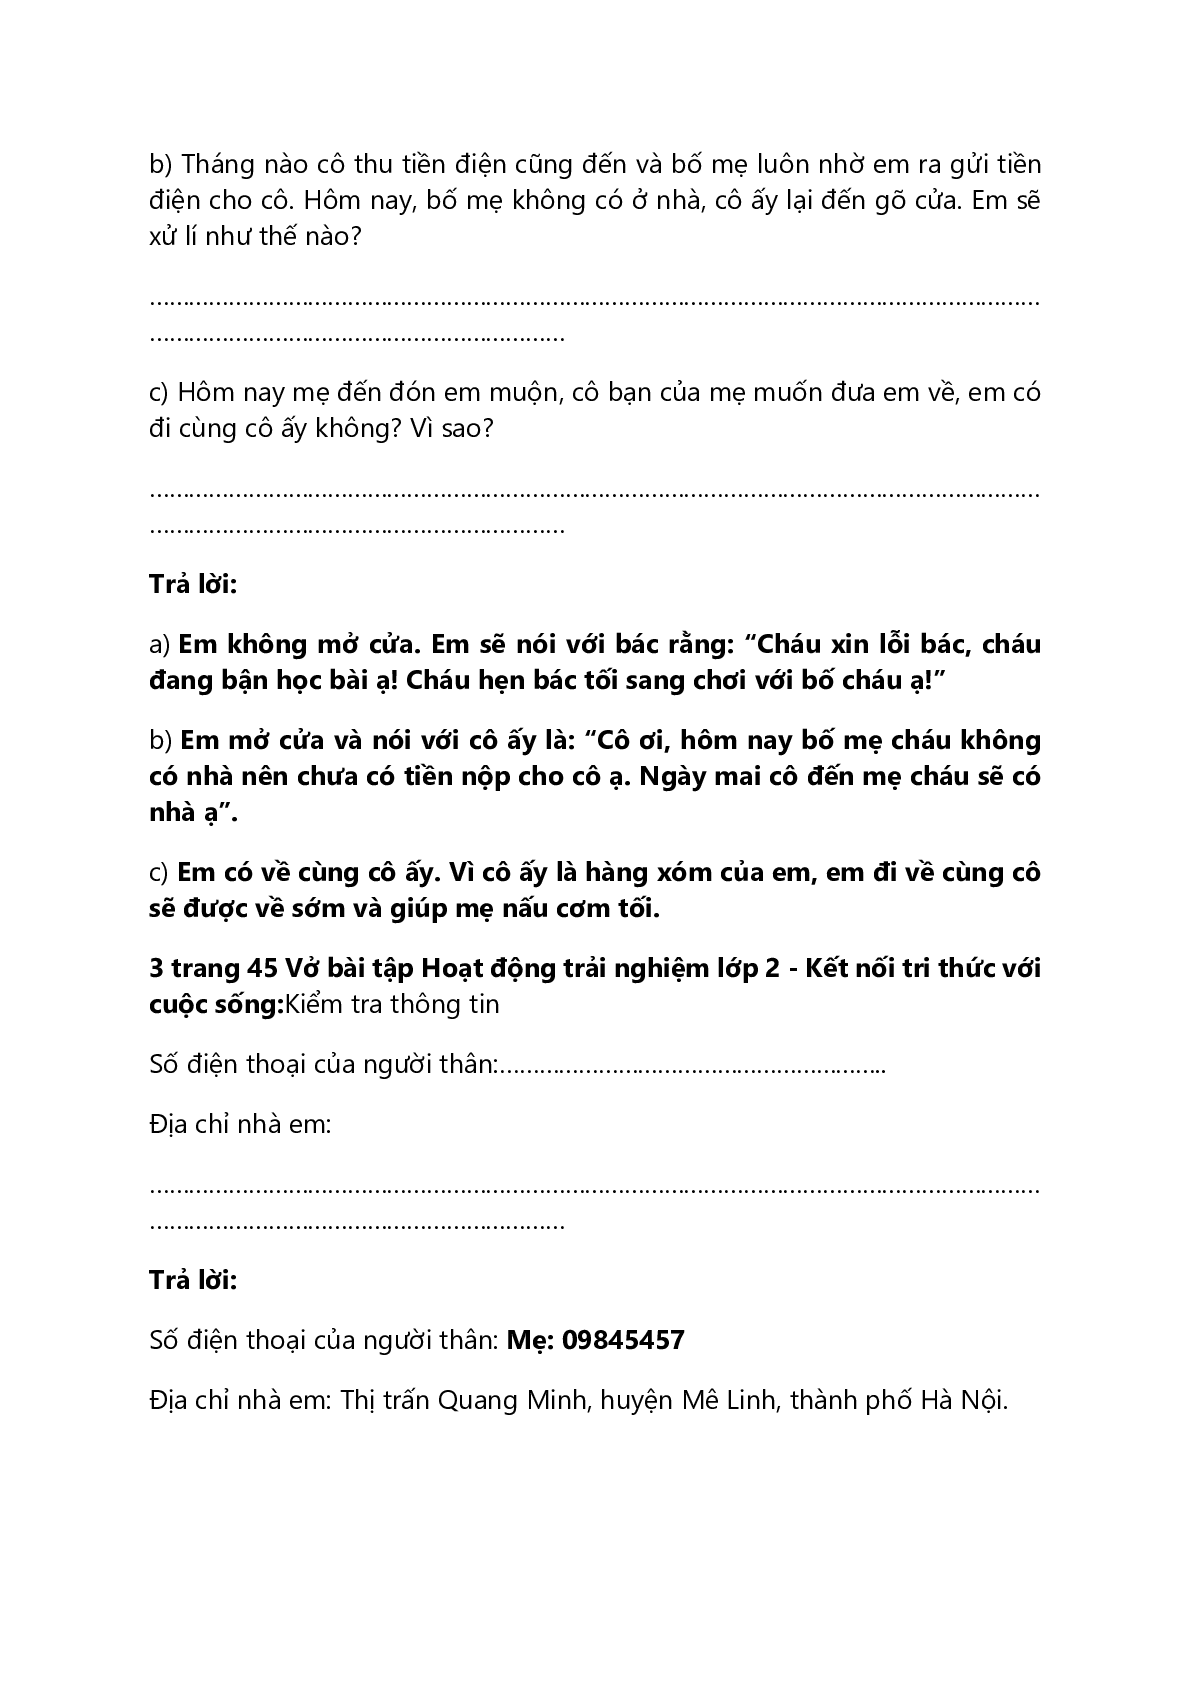 Vở bài tập Hoạt động trải nghiệm lớp 2 trang 45 Bài 24: Phòng tránh bị bắt cóc – Kết nối tri thức (trang 2)